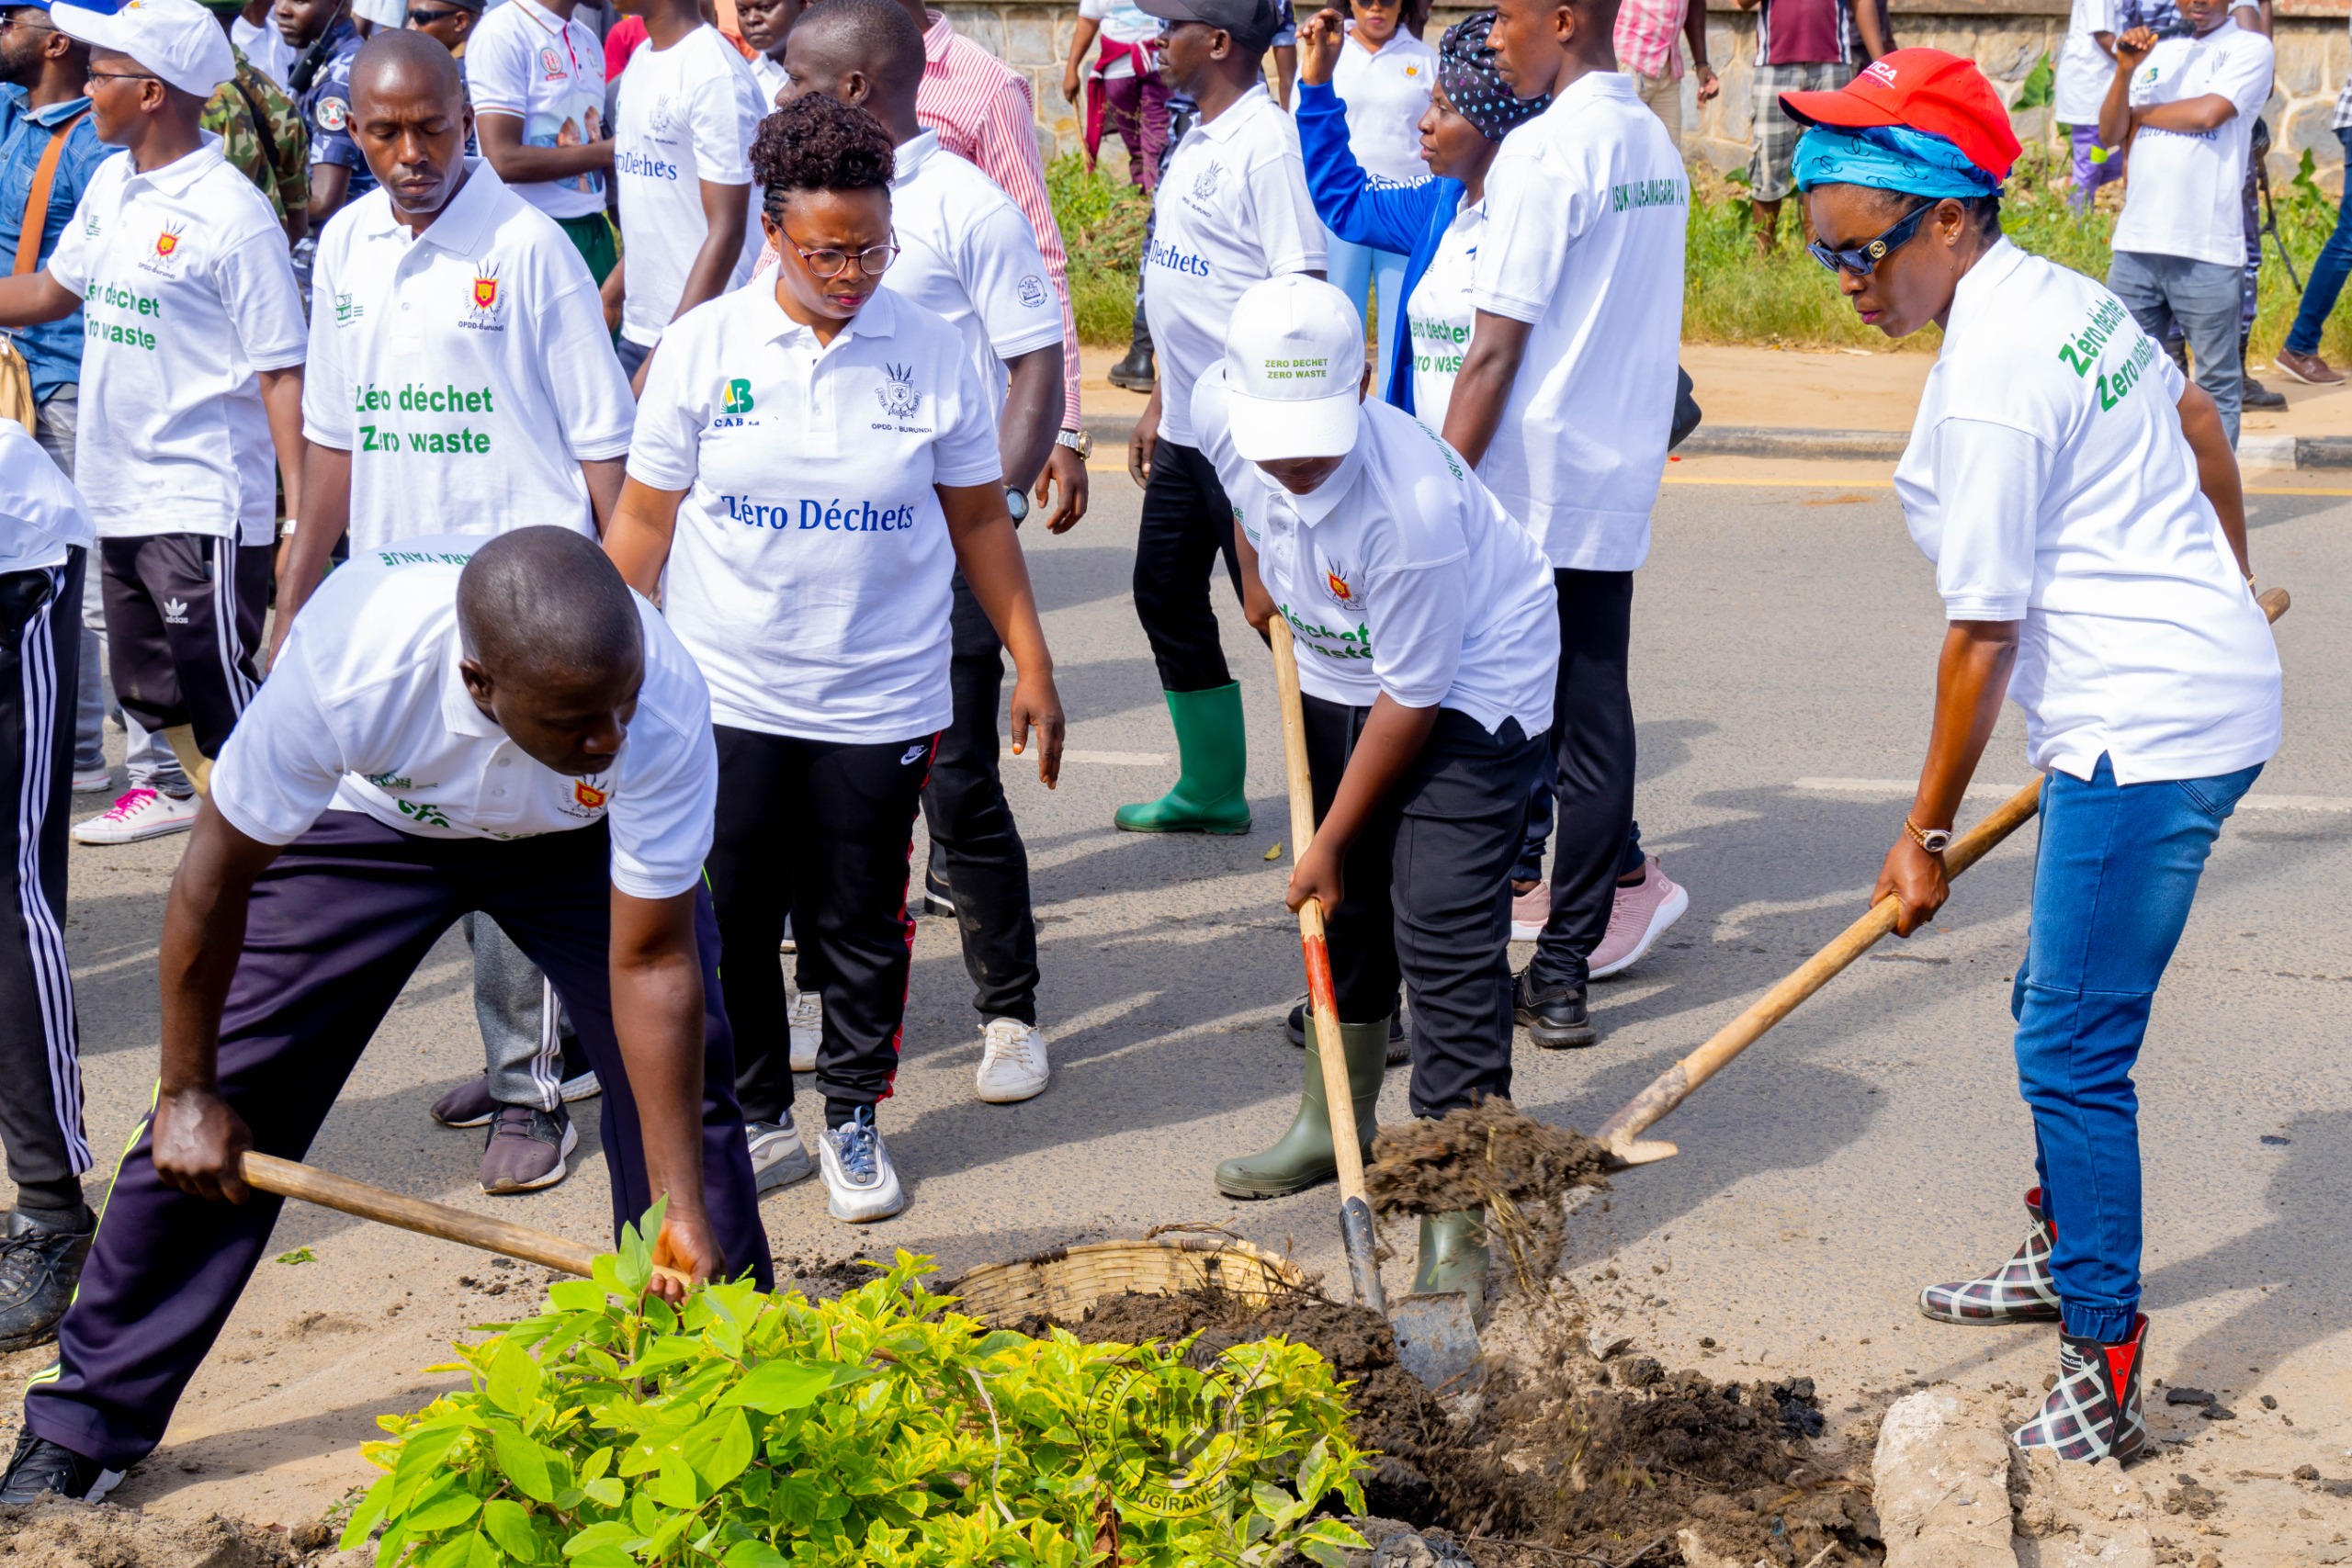 La Première Dame du Burundi lance le mouvement “Zéro Déchet” pour des villes plus propres et durables